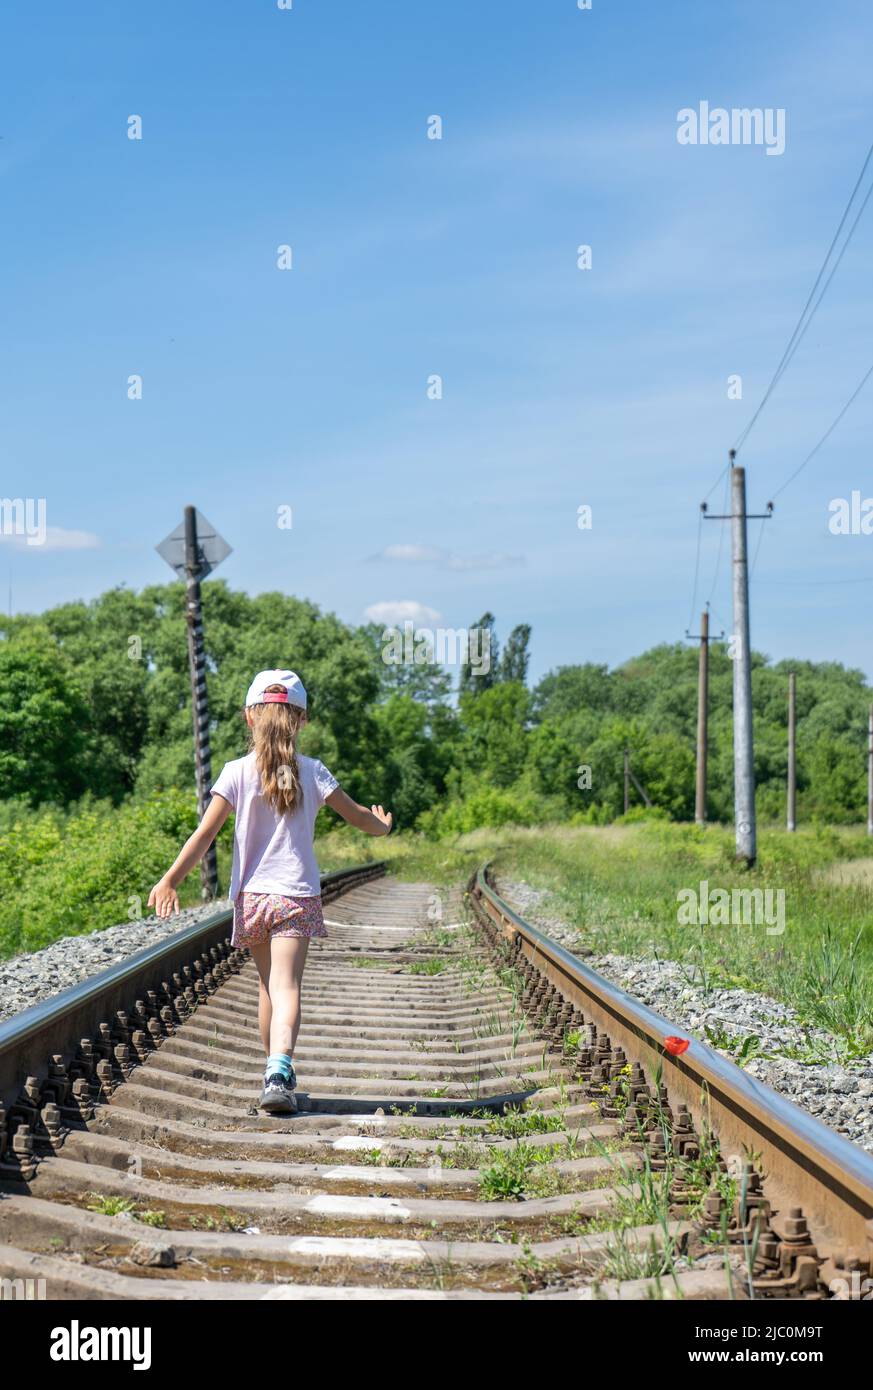 Vista posteriore della bambina che cammina sulla pista ferroviaria contro il cielo blu chiaro Foto Stock